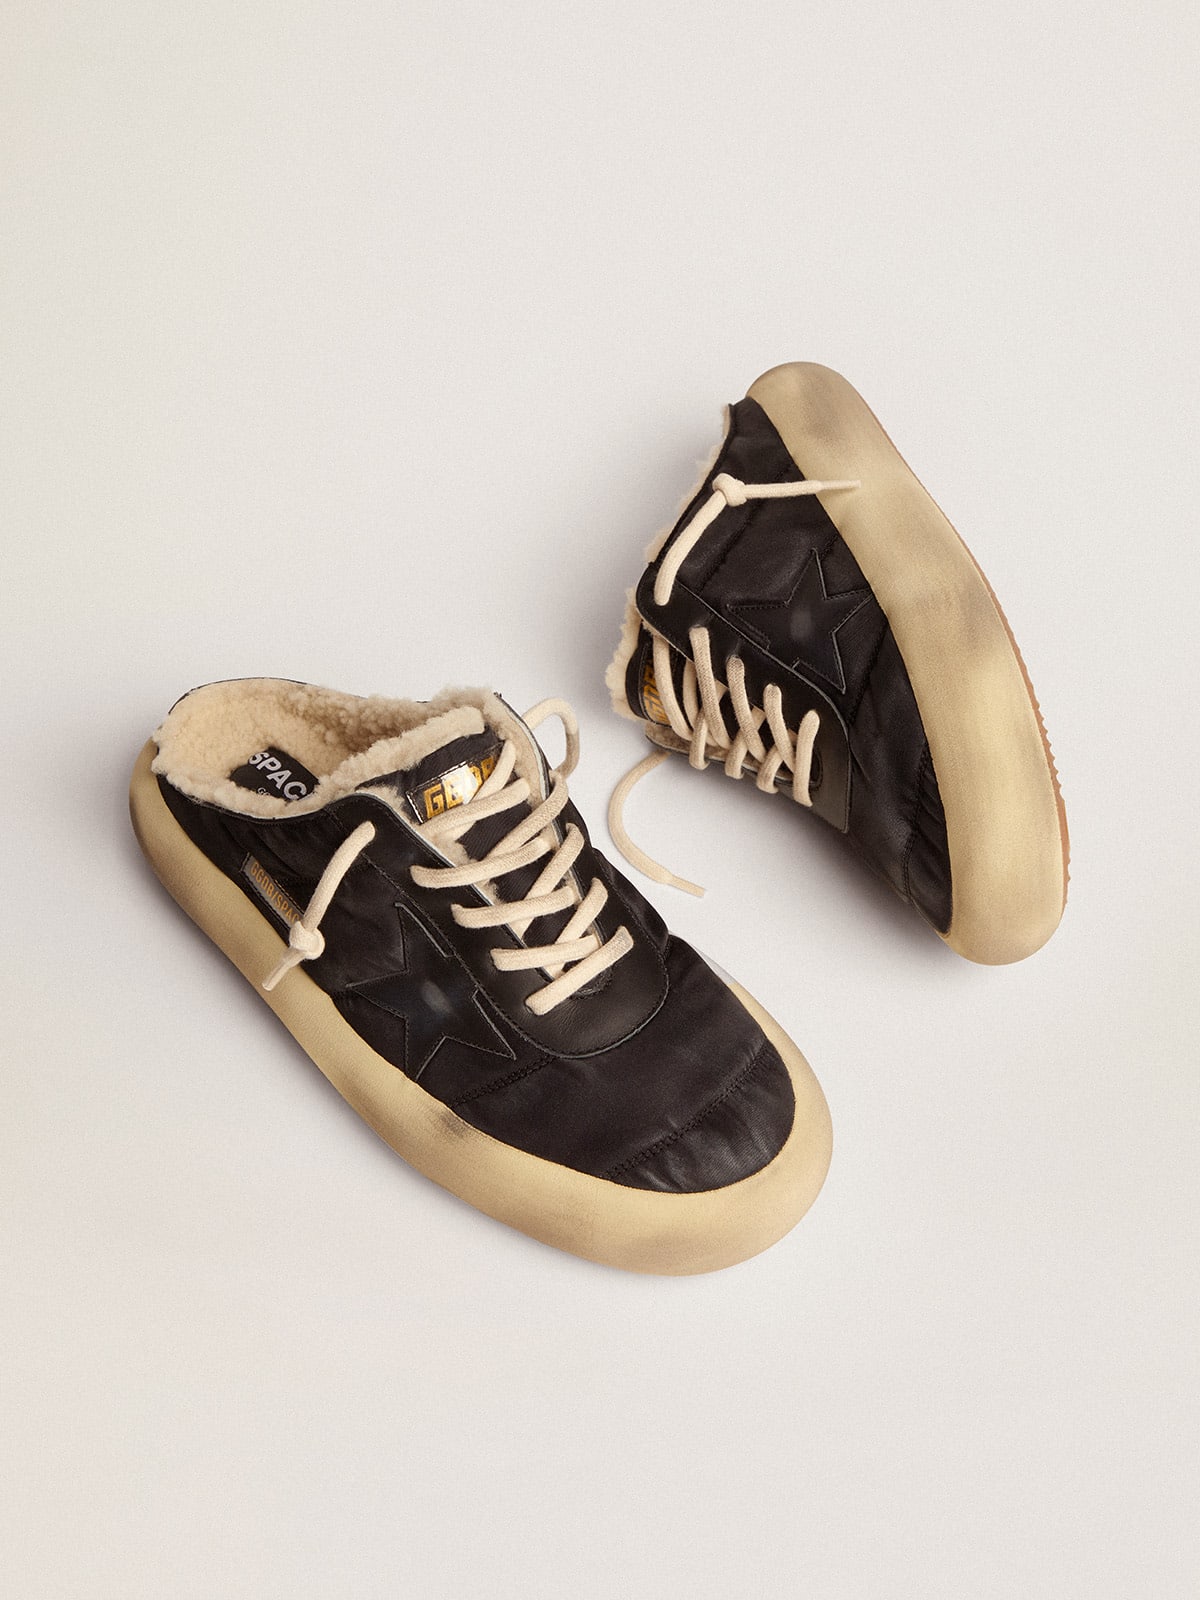 AAA | Golden Goose España Golden Goose Men's Space-Star Sabot shoes in ...